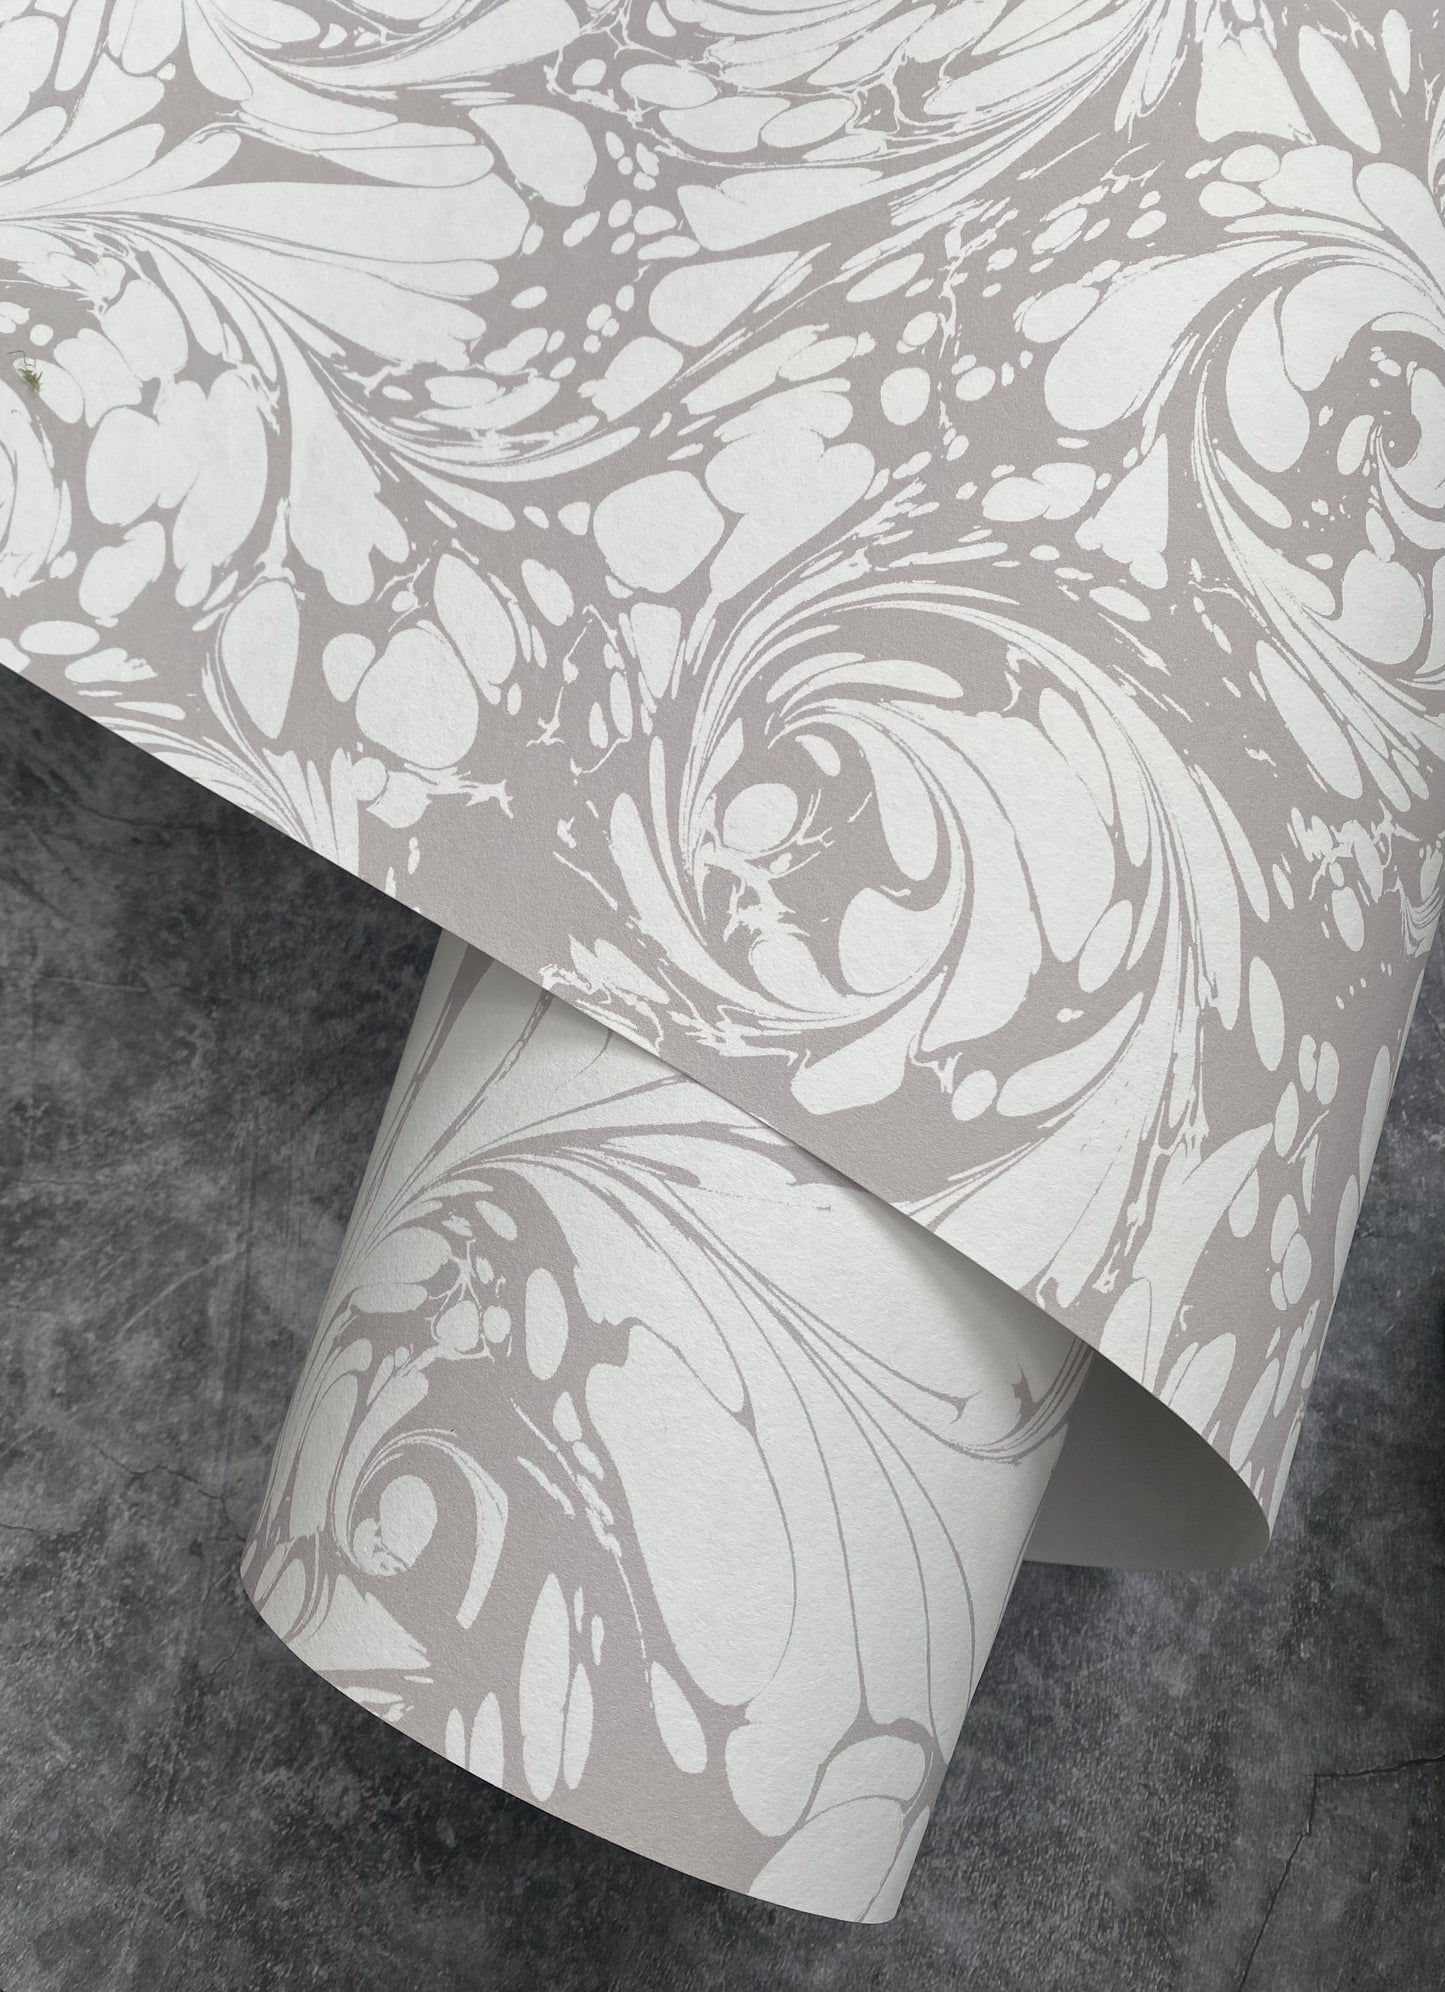 Printed Wallpaper - 'Flourish' Col: Silver Ghost - Eco Non-Woven